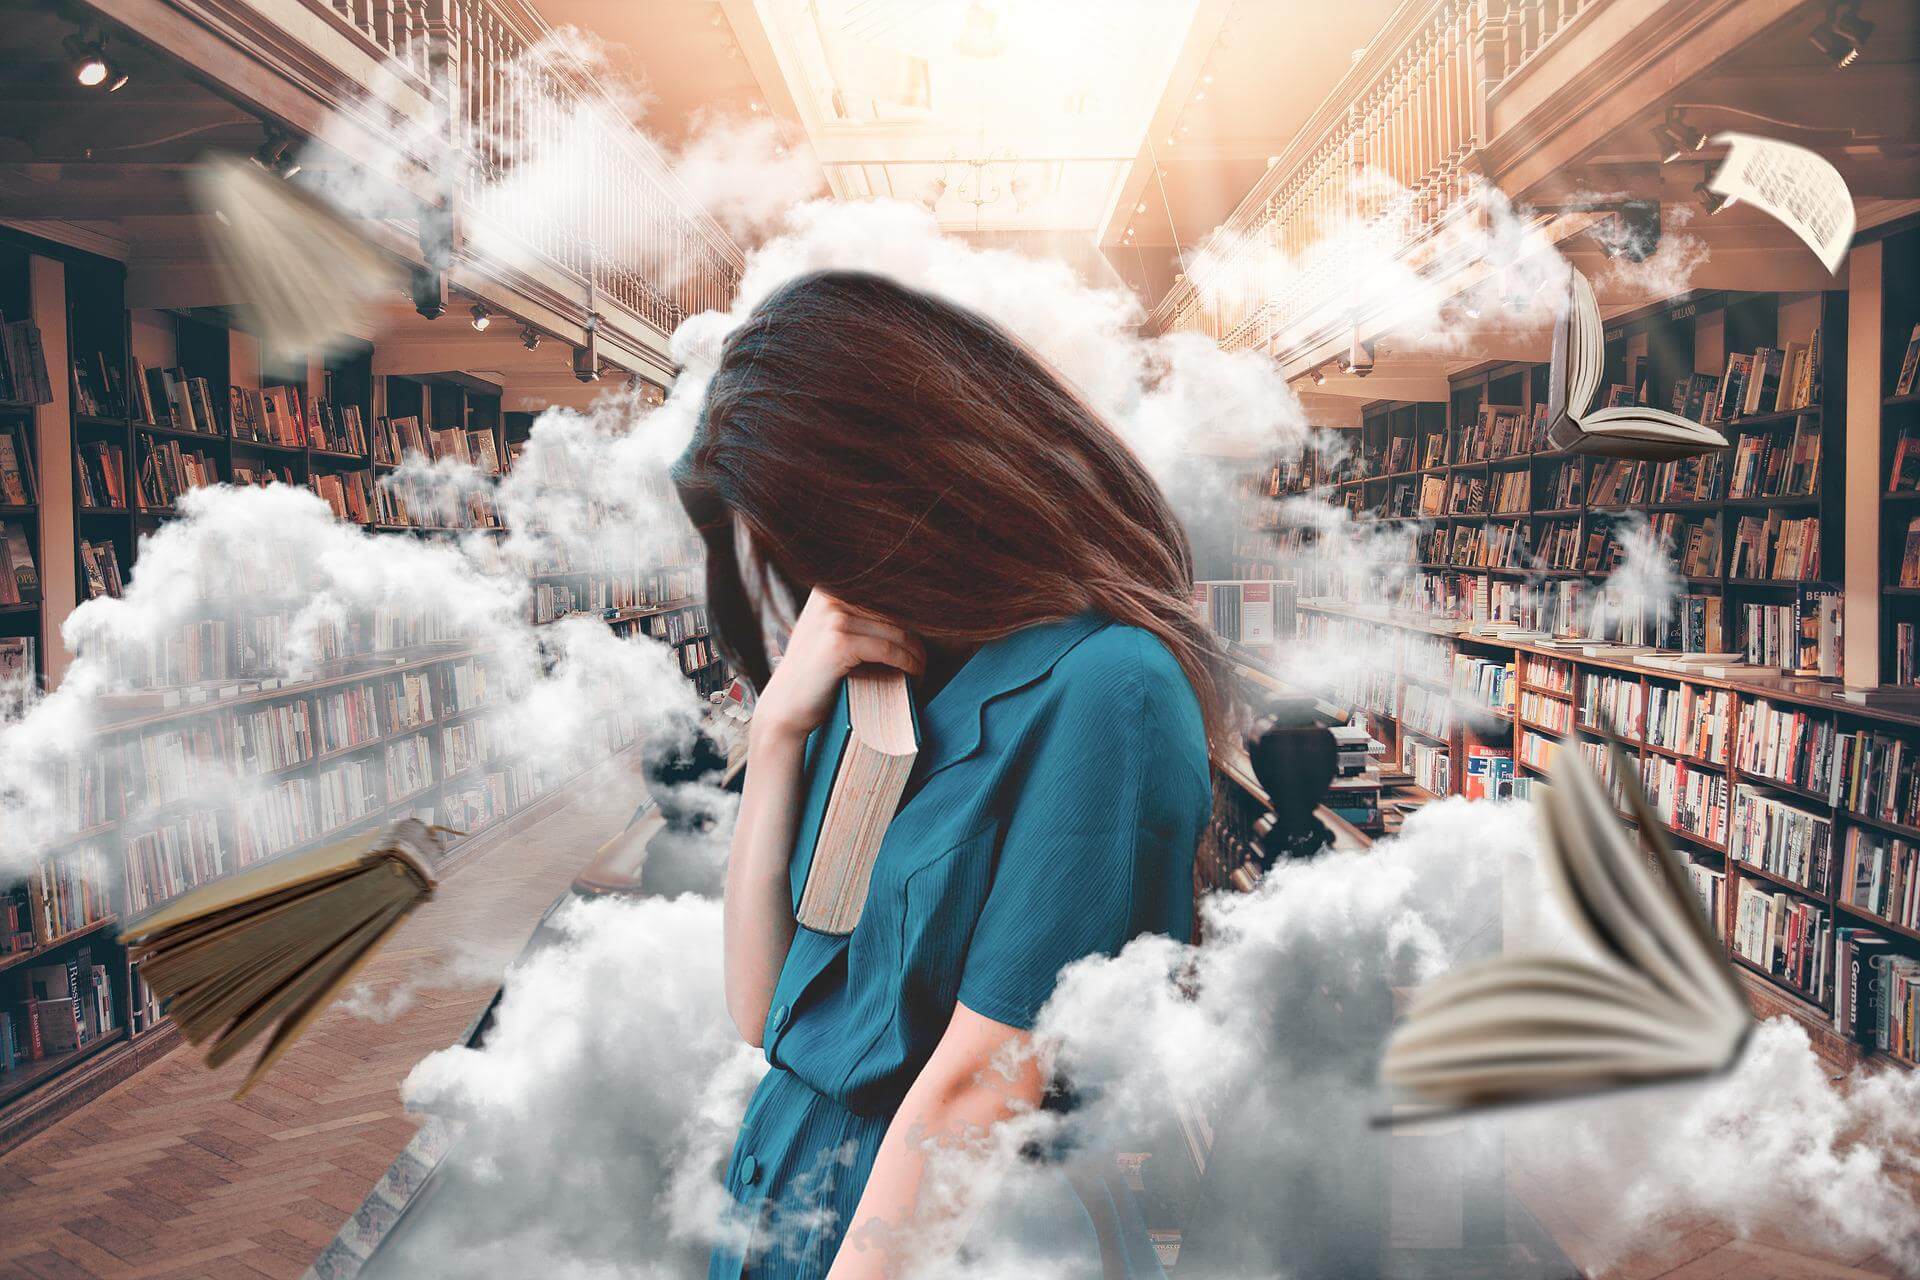 Femme dans une bibliothèque, tête baissée sur sa main, nuages et livres volent autour d'elle